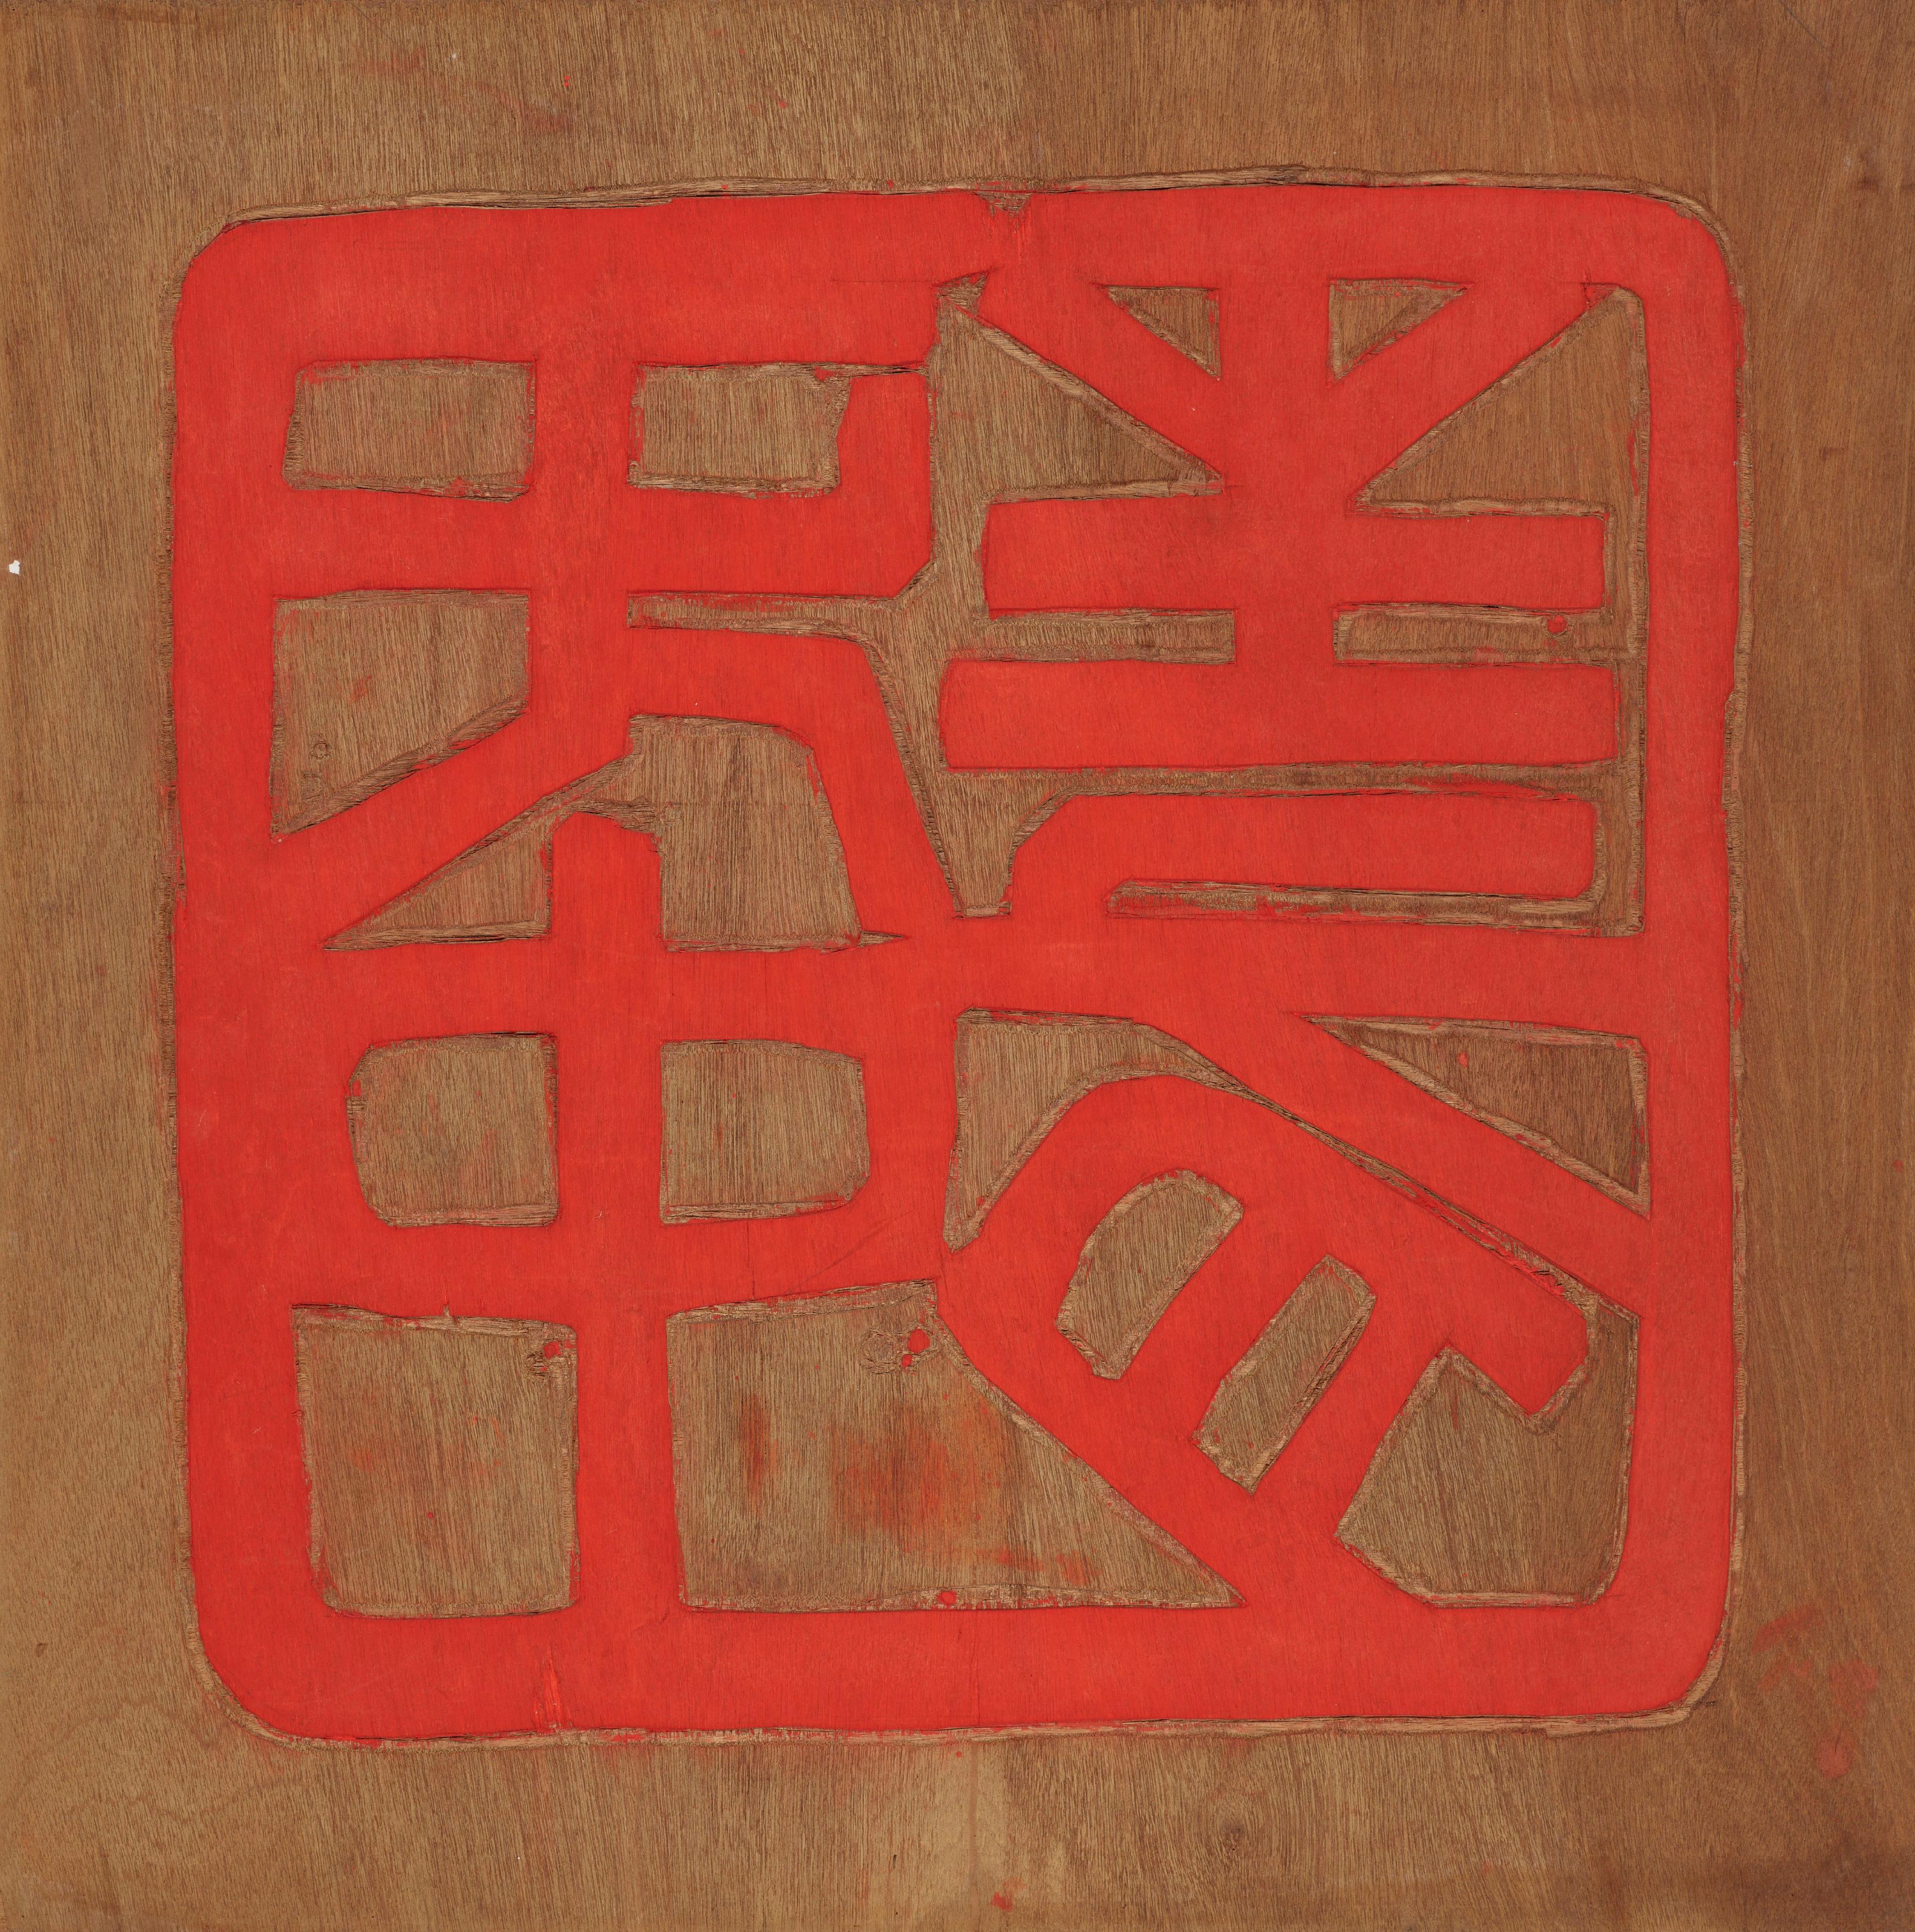 香港艺术馆获唐景森夫人赵慧仪慷慨捐赠37件藏品，包括两位已故香港著名艺术家唐景森和张义的作品。图示唐景森印章版画作品《无中生有》。

